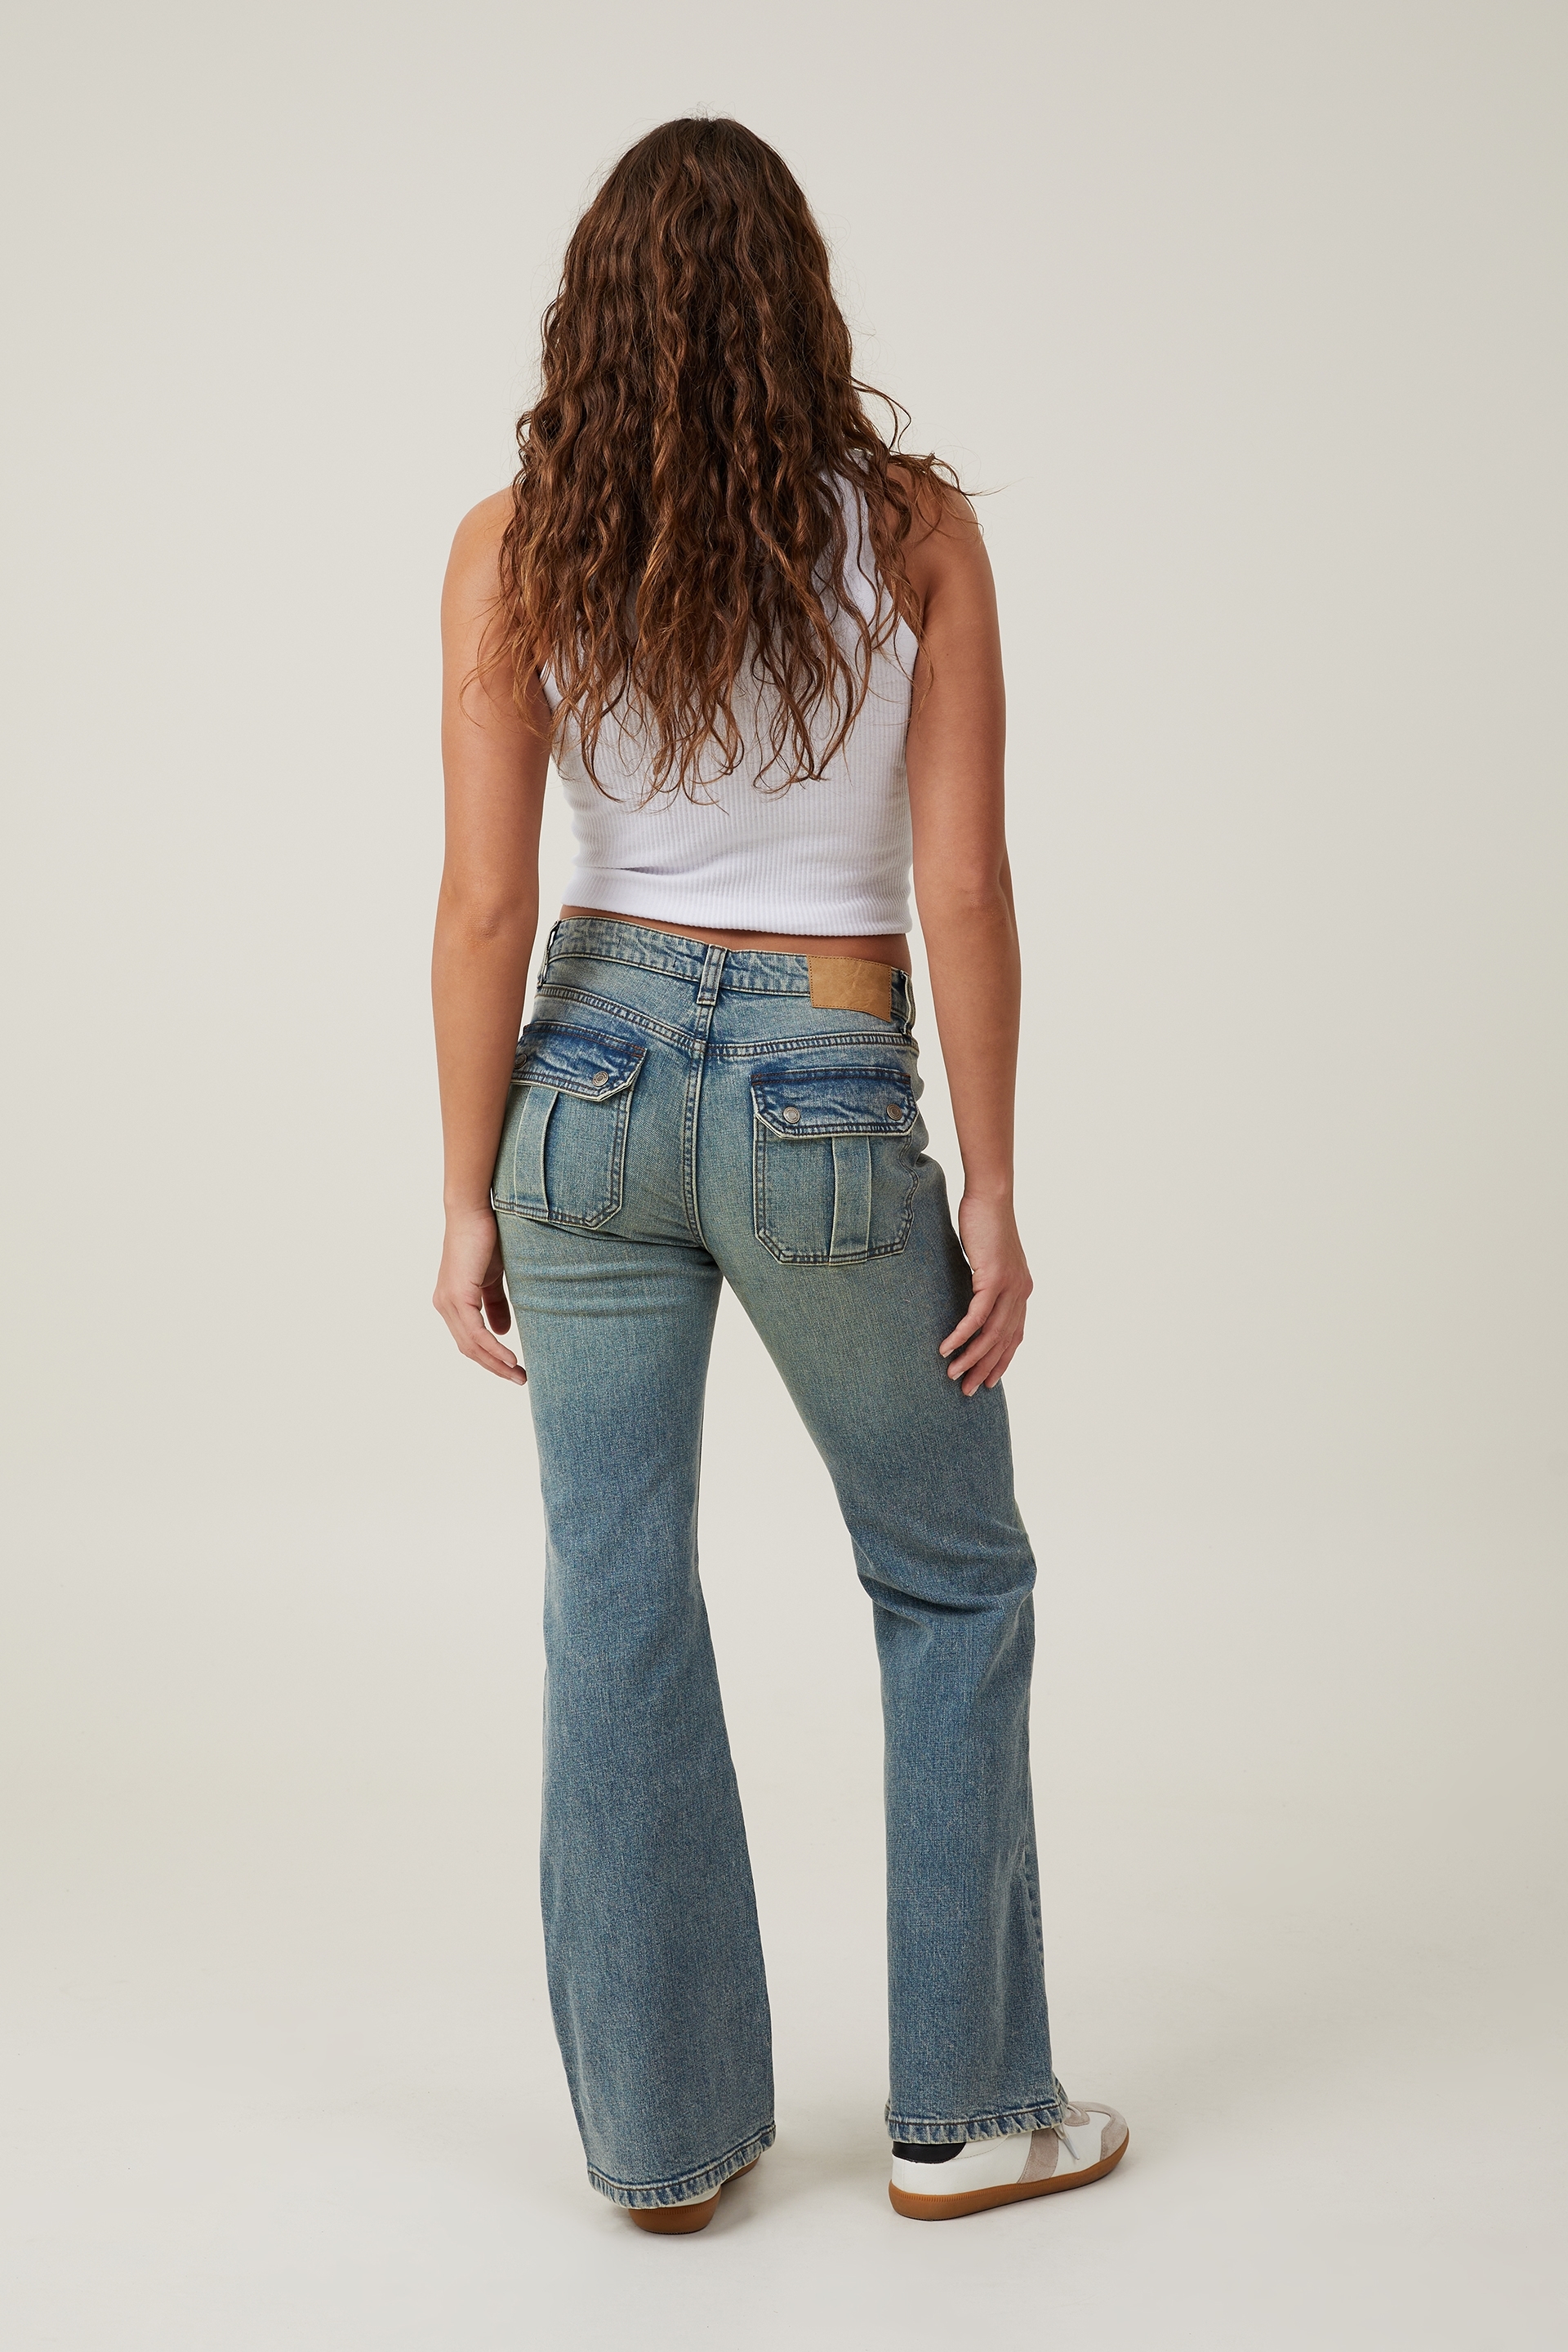 Organic Cotton Stretch Boot-Cut Jean